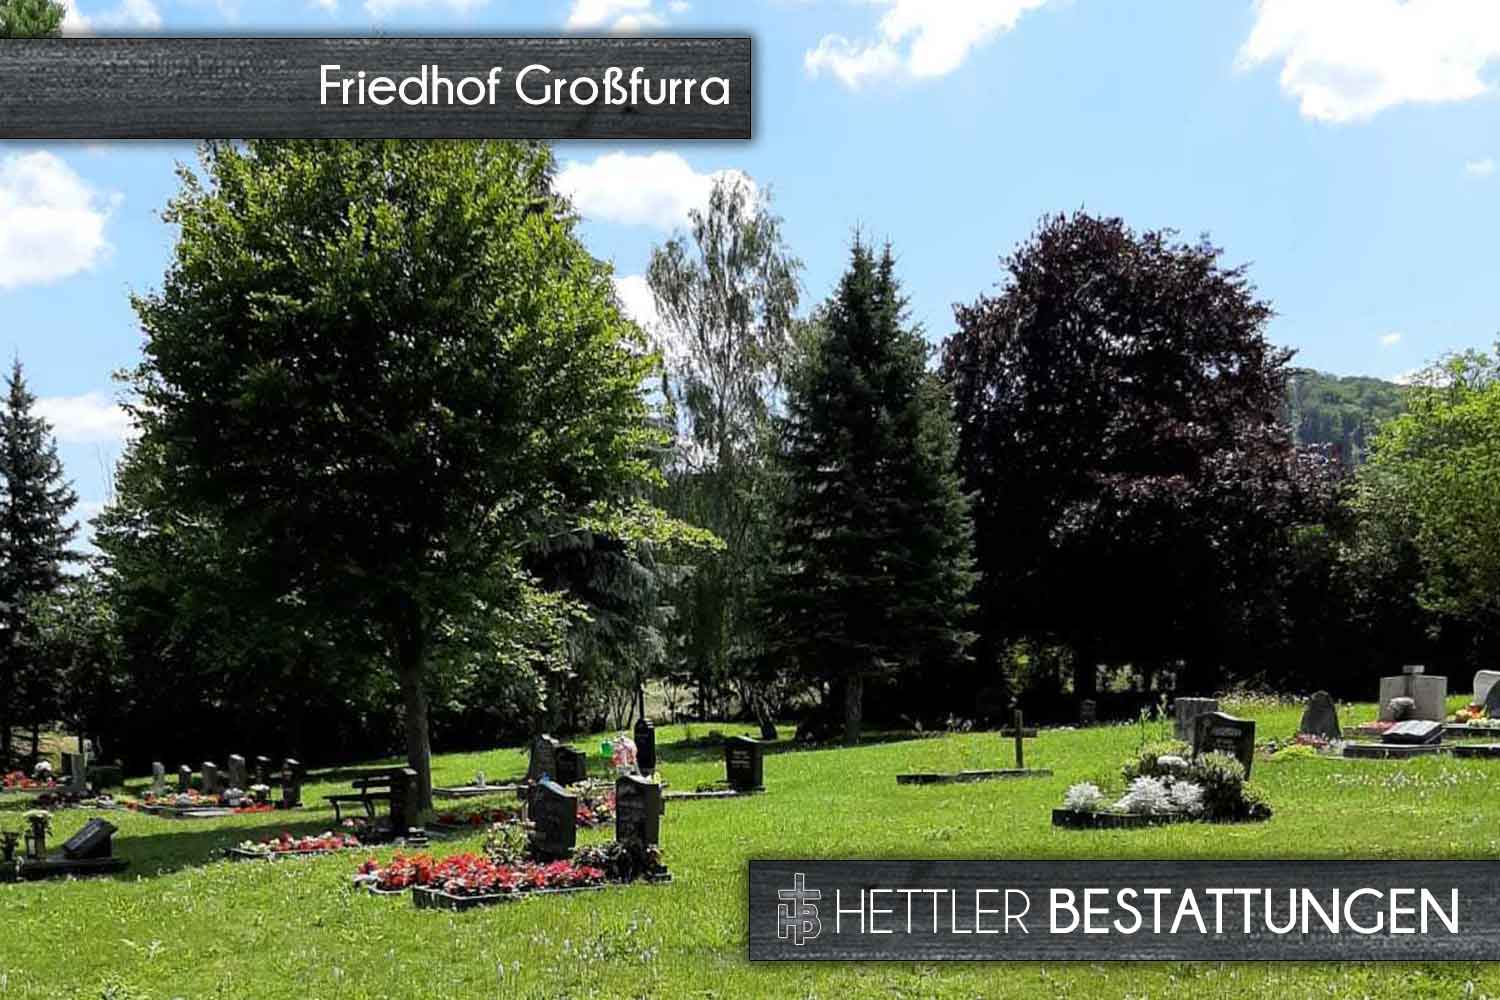 Friedhof in Großfurra. Ihr Ort des Abschieds mit Hettler Bestattungen.